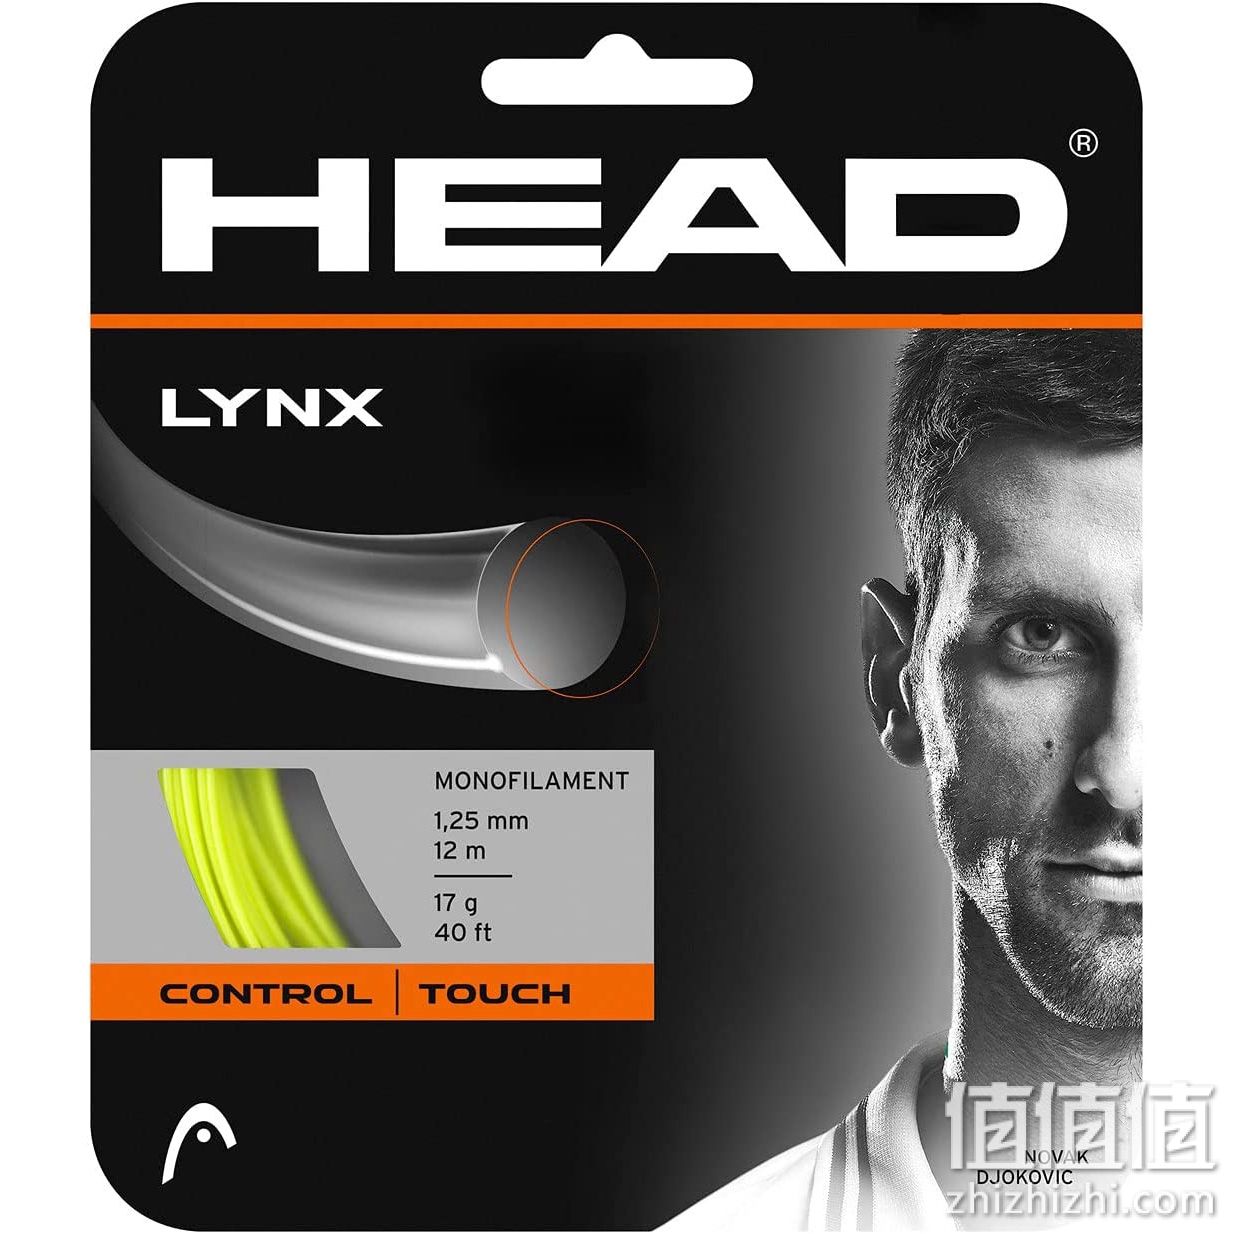 Head Lynx 网球拍 40 英尺套装 - 17 号单丝球拍弦,霓虹黄色